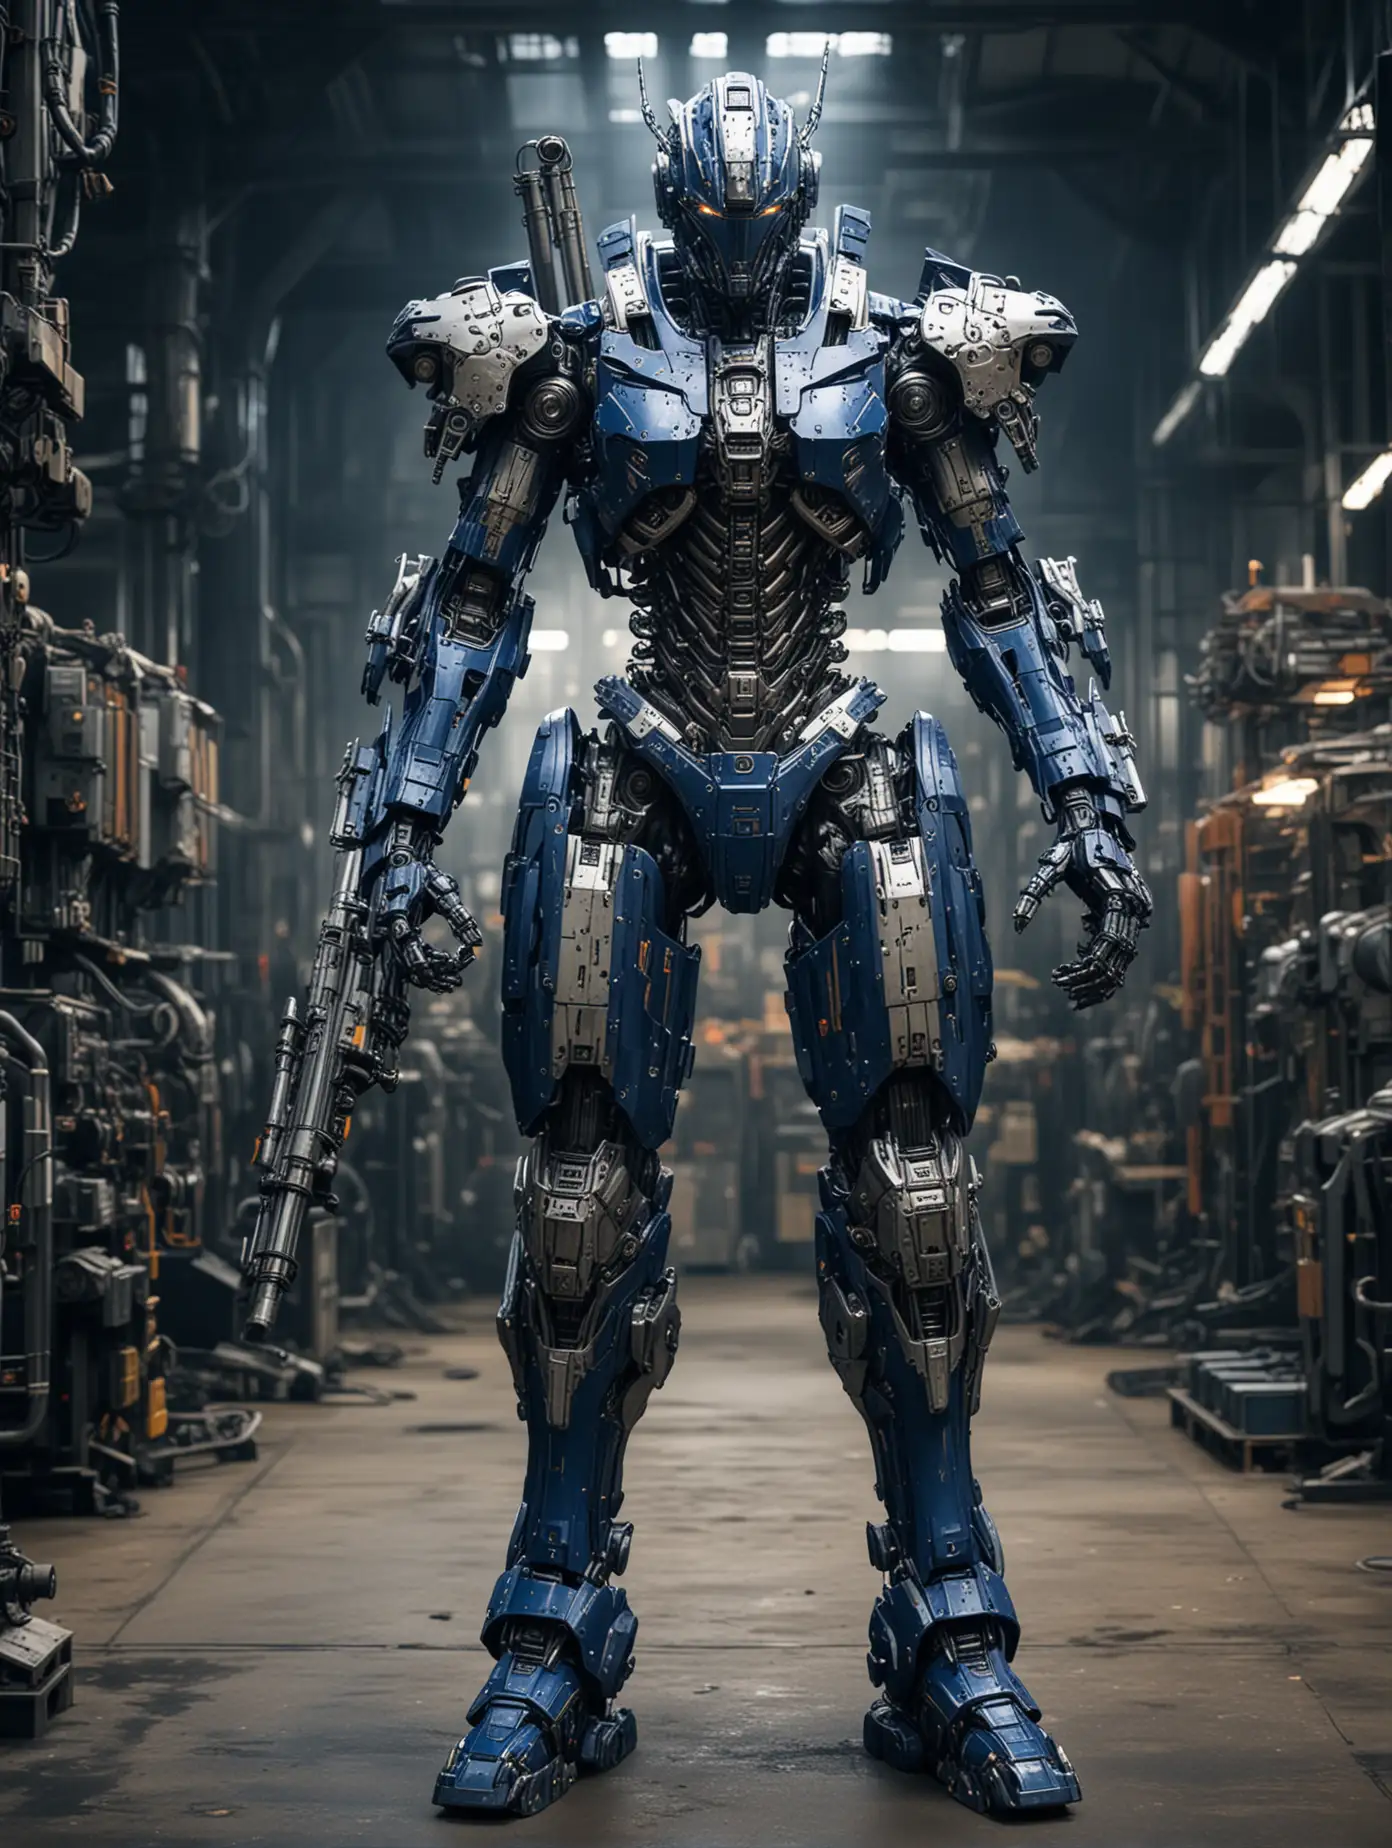 Massive 10Foot Mech Suit in Factory Cyberpunk Style